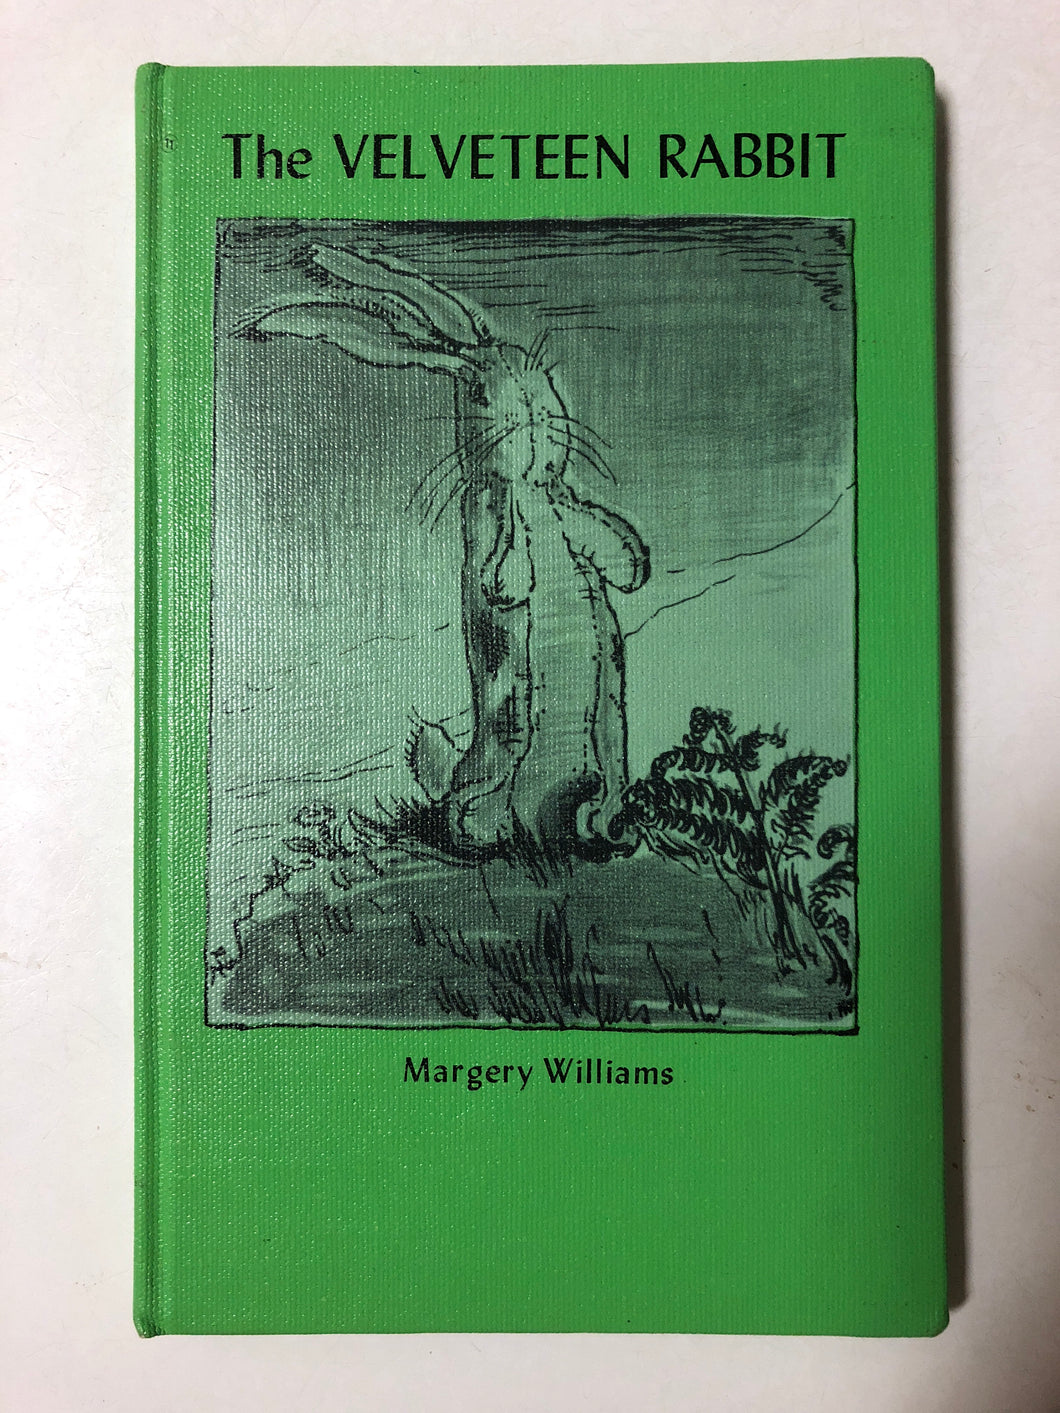 The Velveteen Rabbit - Slick Cat Books 